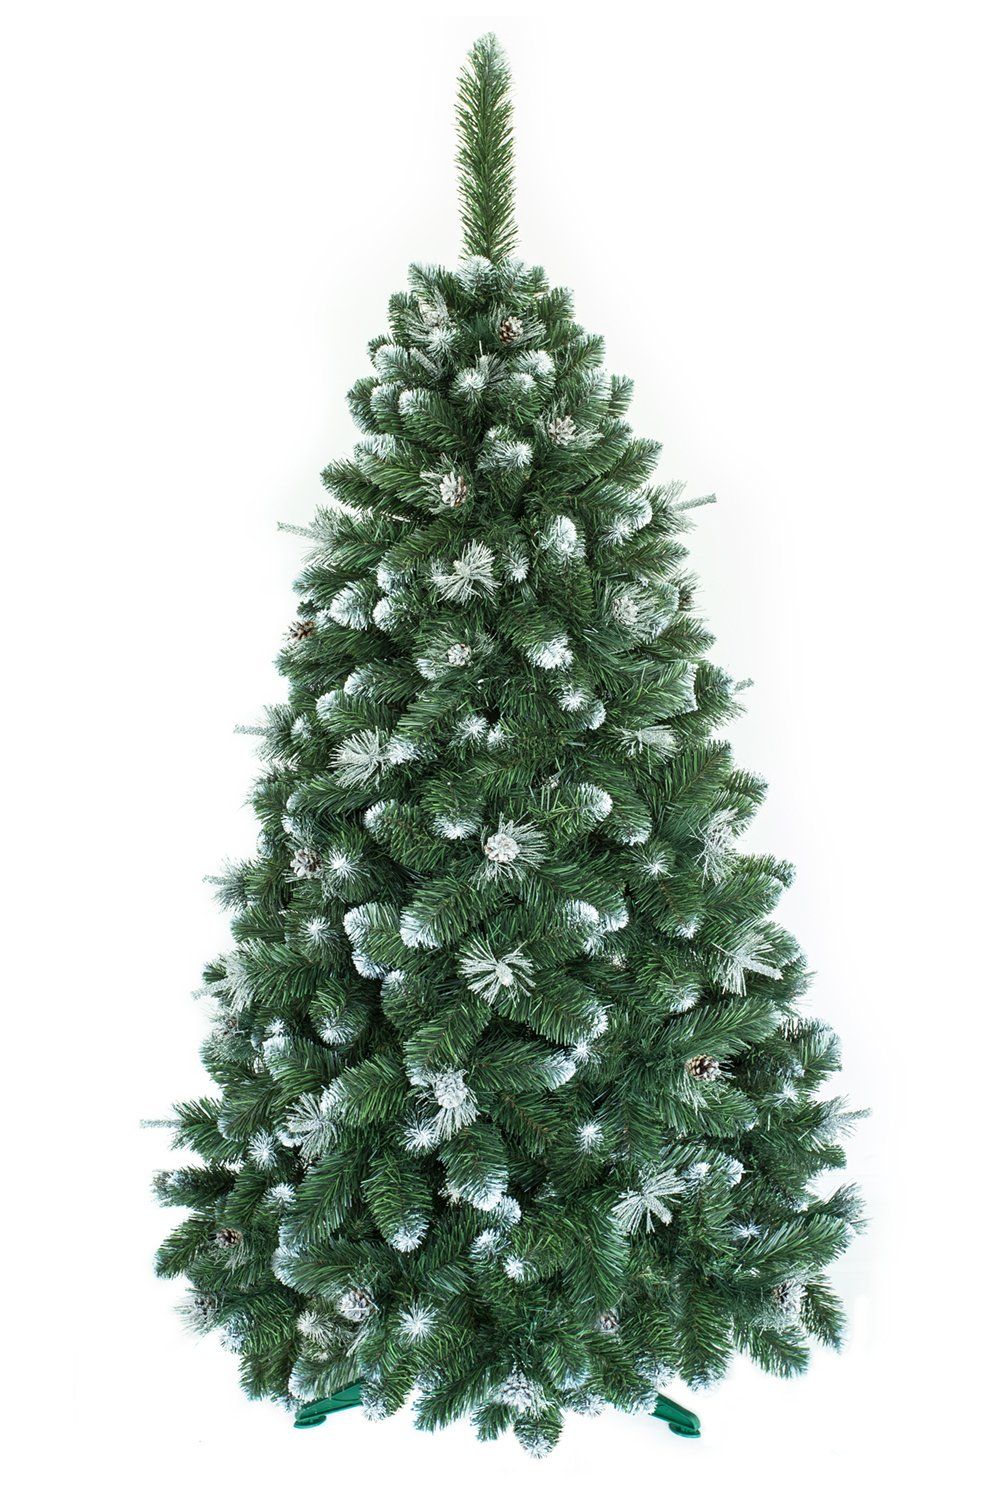 Umelý vianočný stromček Borovica Strieborná 120cm